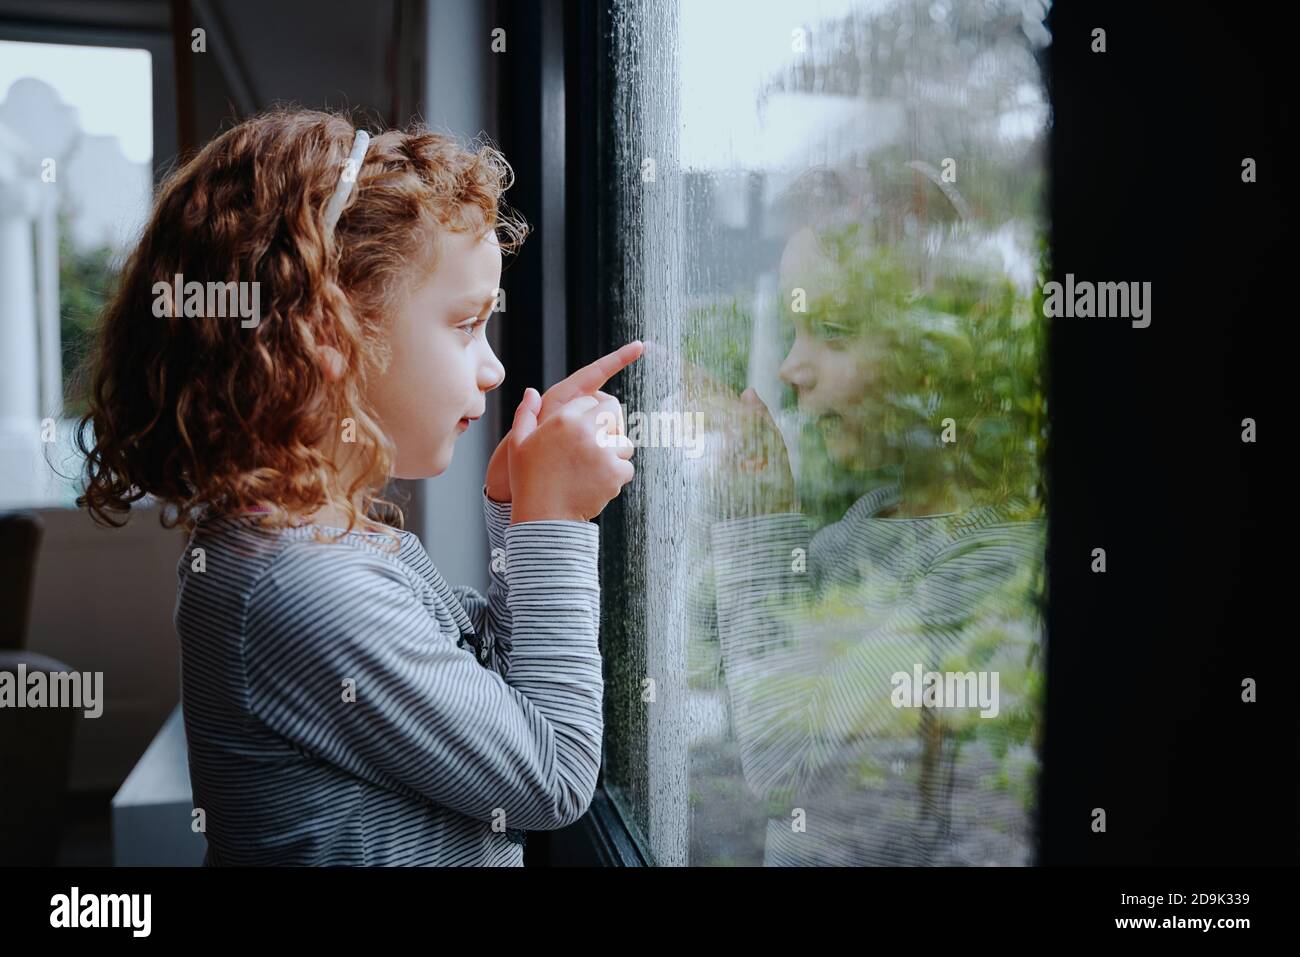 Carina bambina in piedi vicino alla finestra guardando la pioggia all'esterno Foto Stock